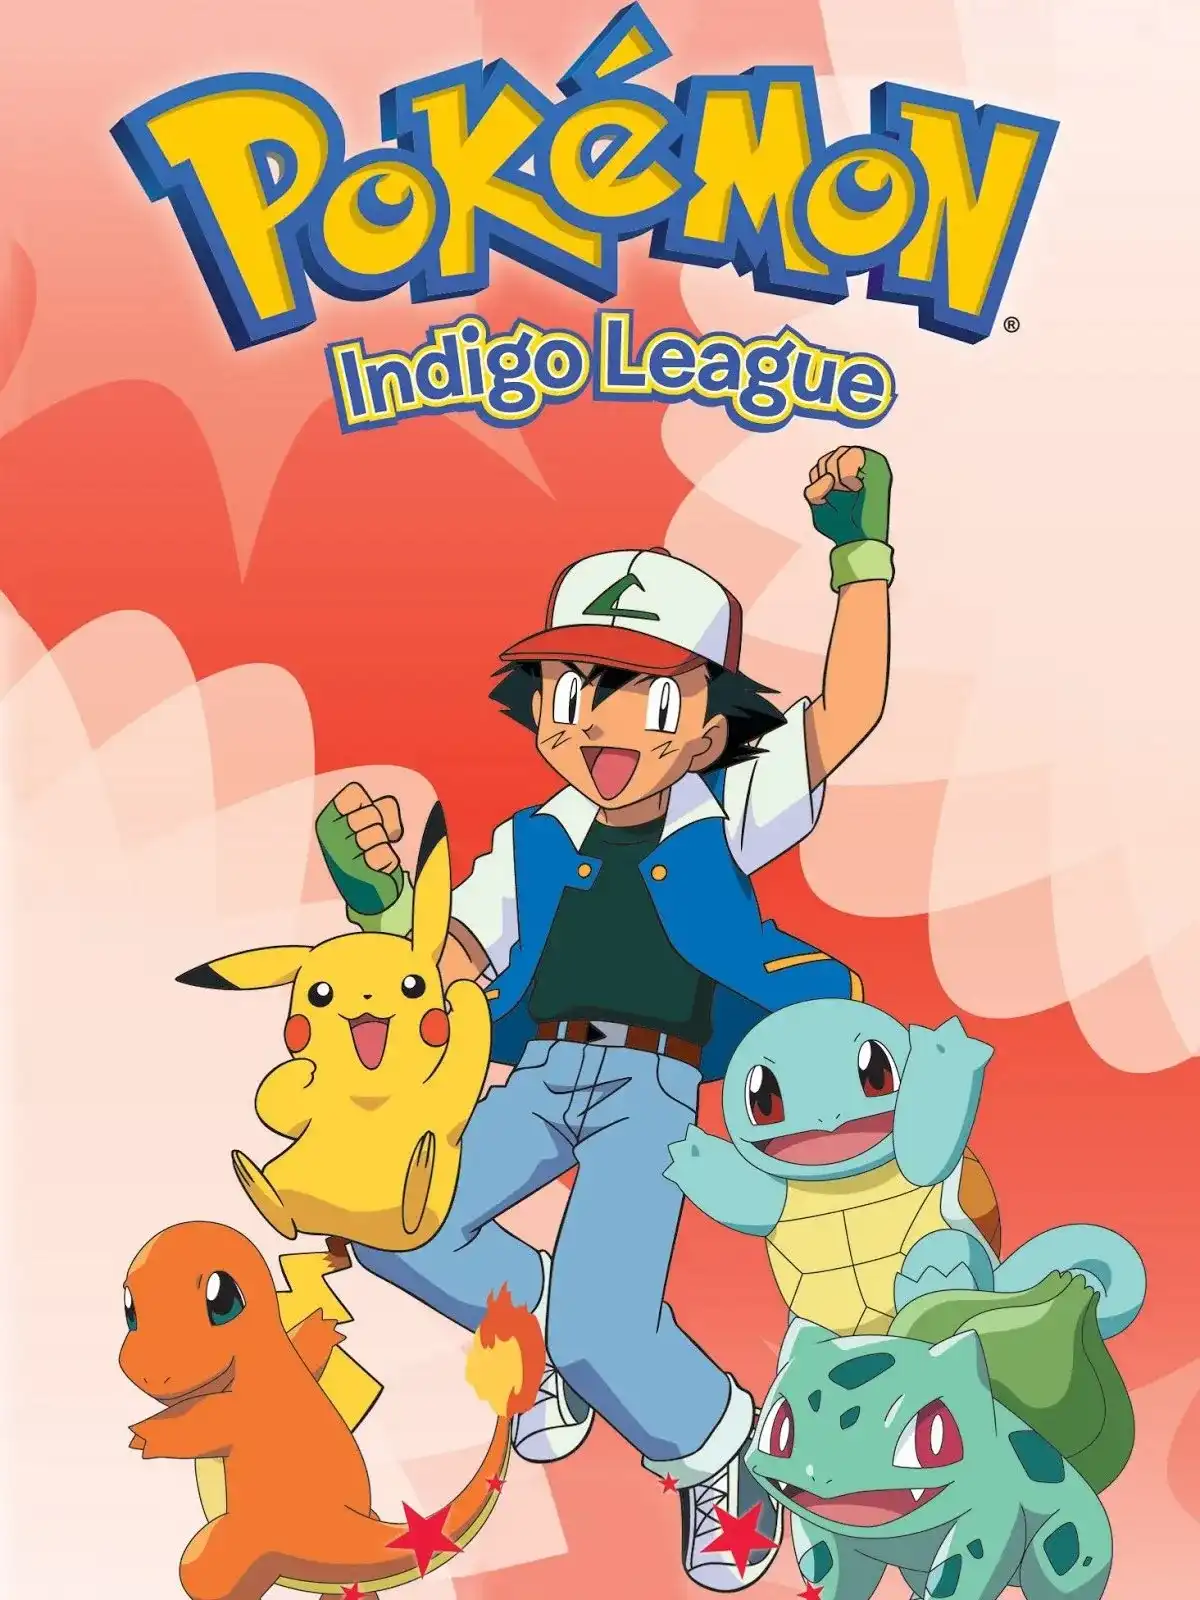 Pokémon: Indigo League (Season 1) Hindi Episodes 480p HQ ...